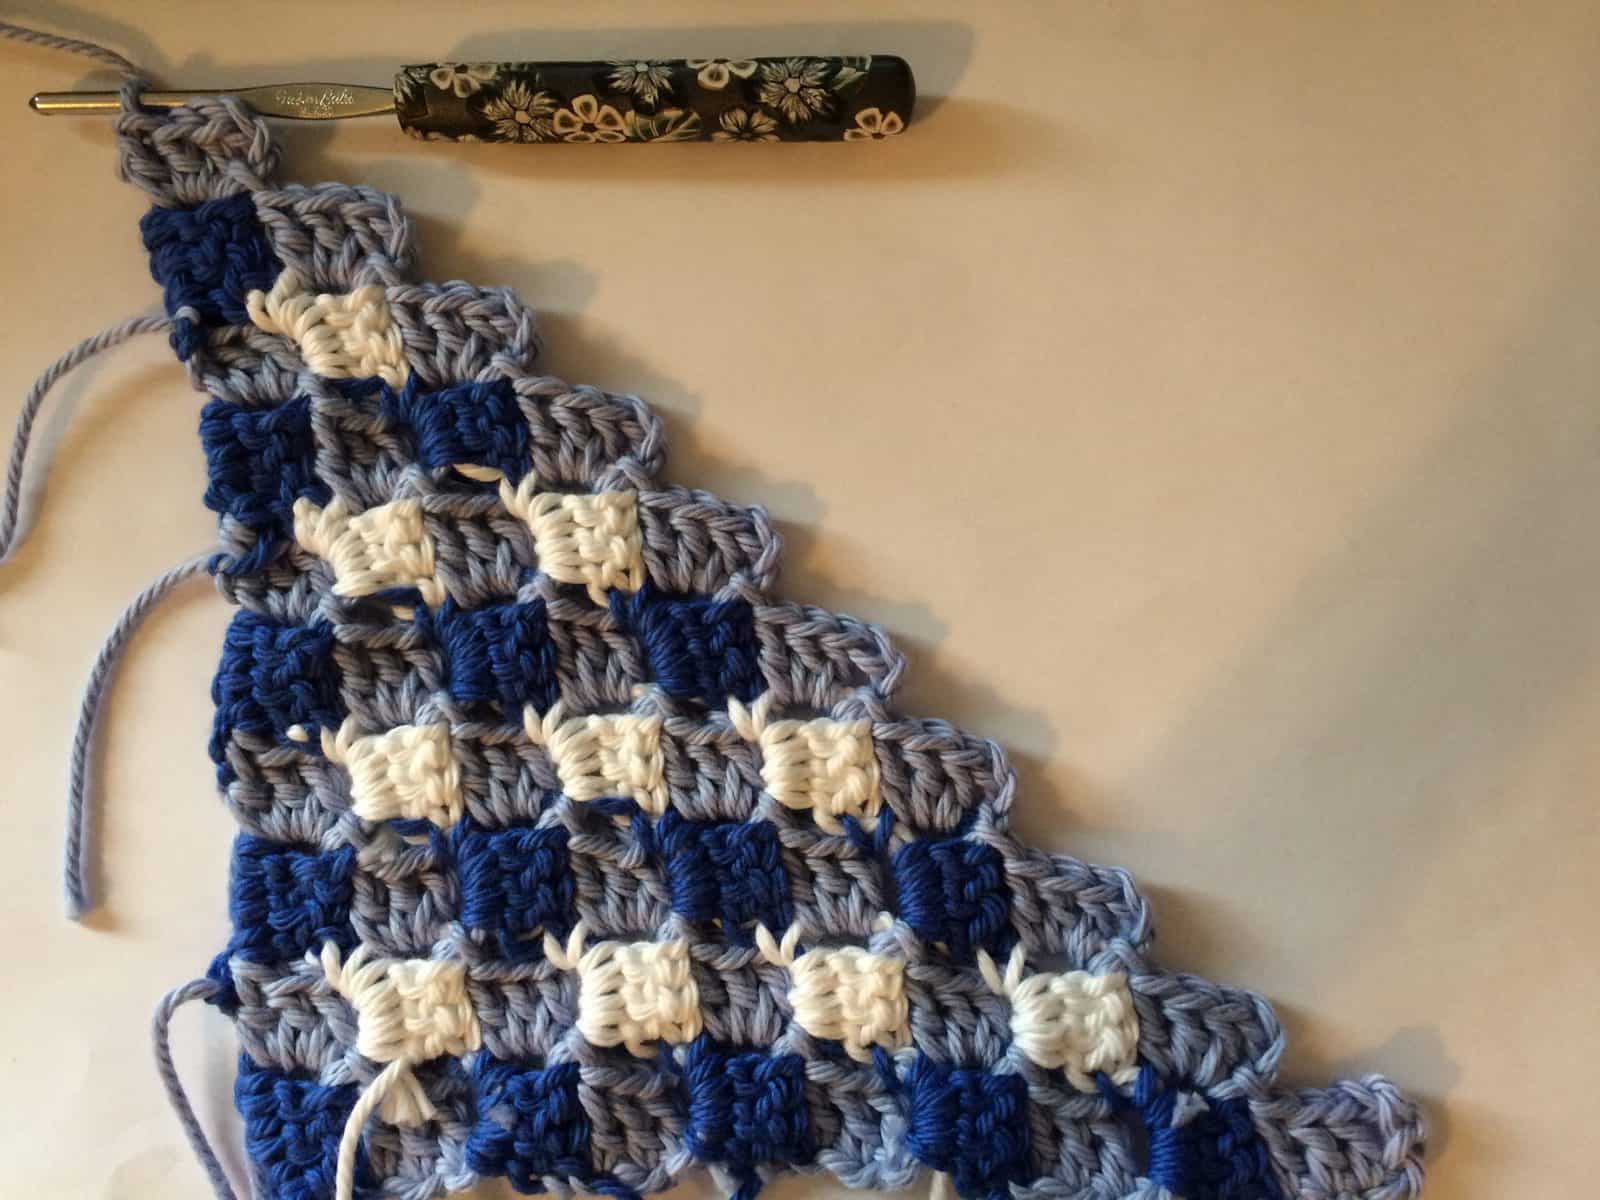 Crochet pillow case corner first 10 rows.